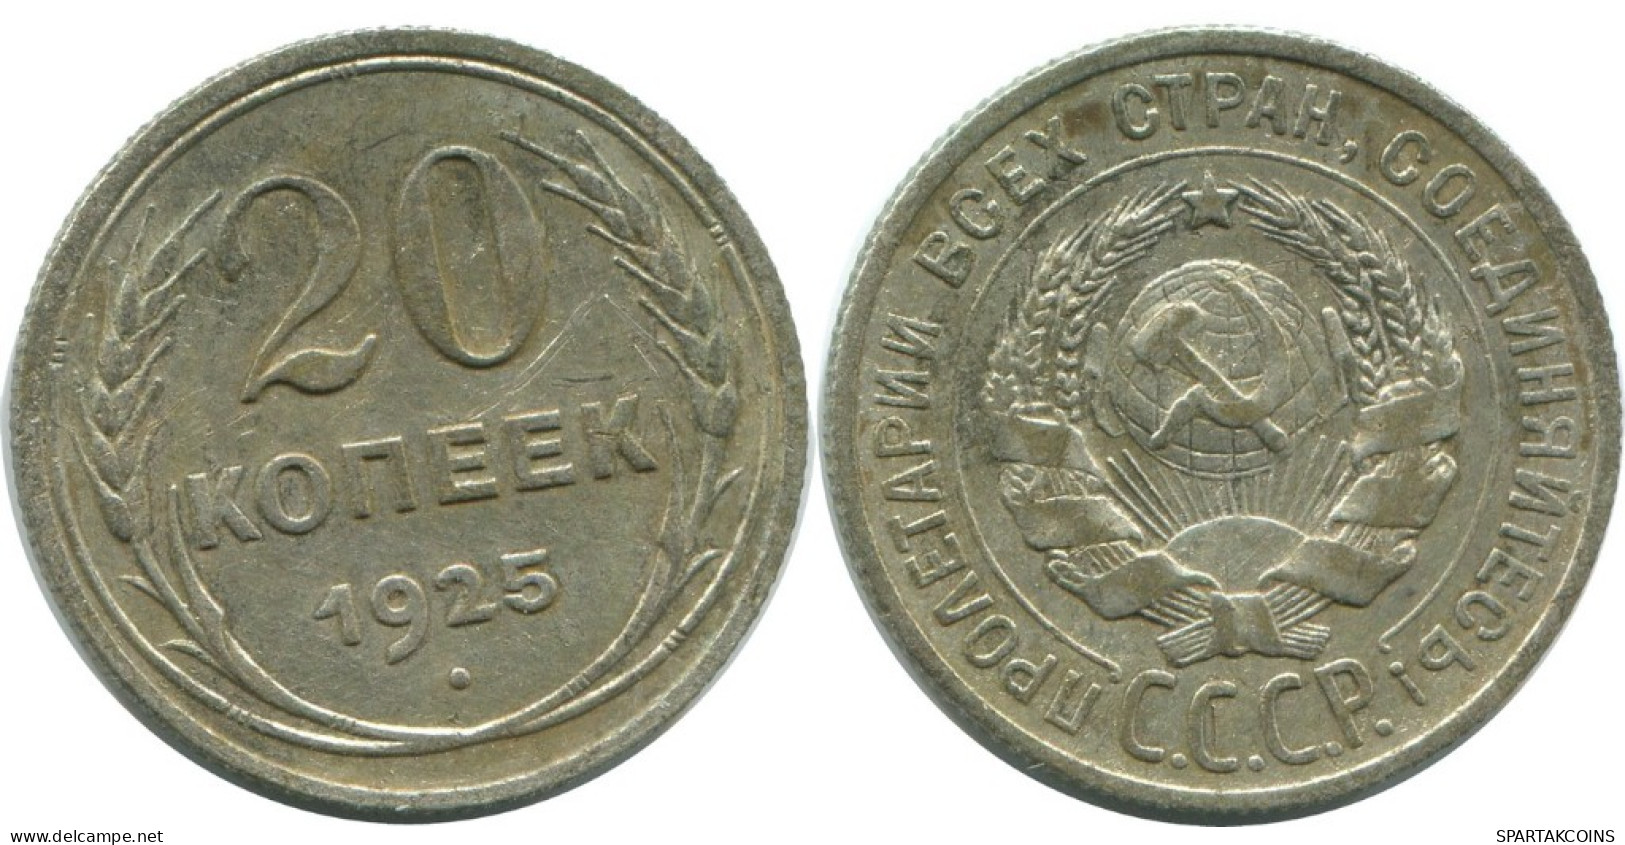 20 KOPEKS 1925 RUSSLAND RUSSIA USSR SILBER Münze HIGH GRADE #AF313.4.D.A - Russia